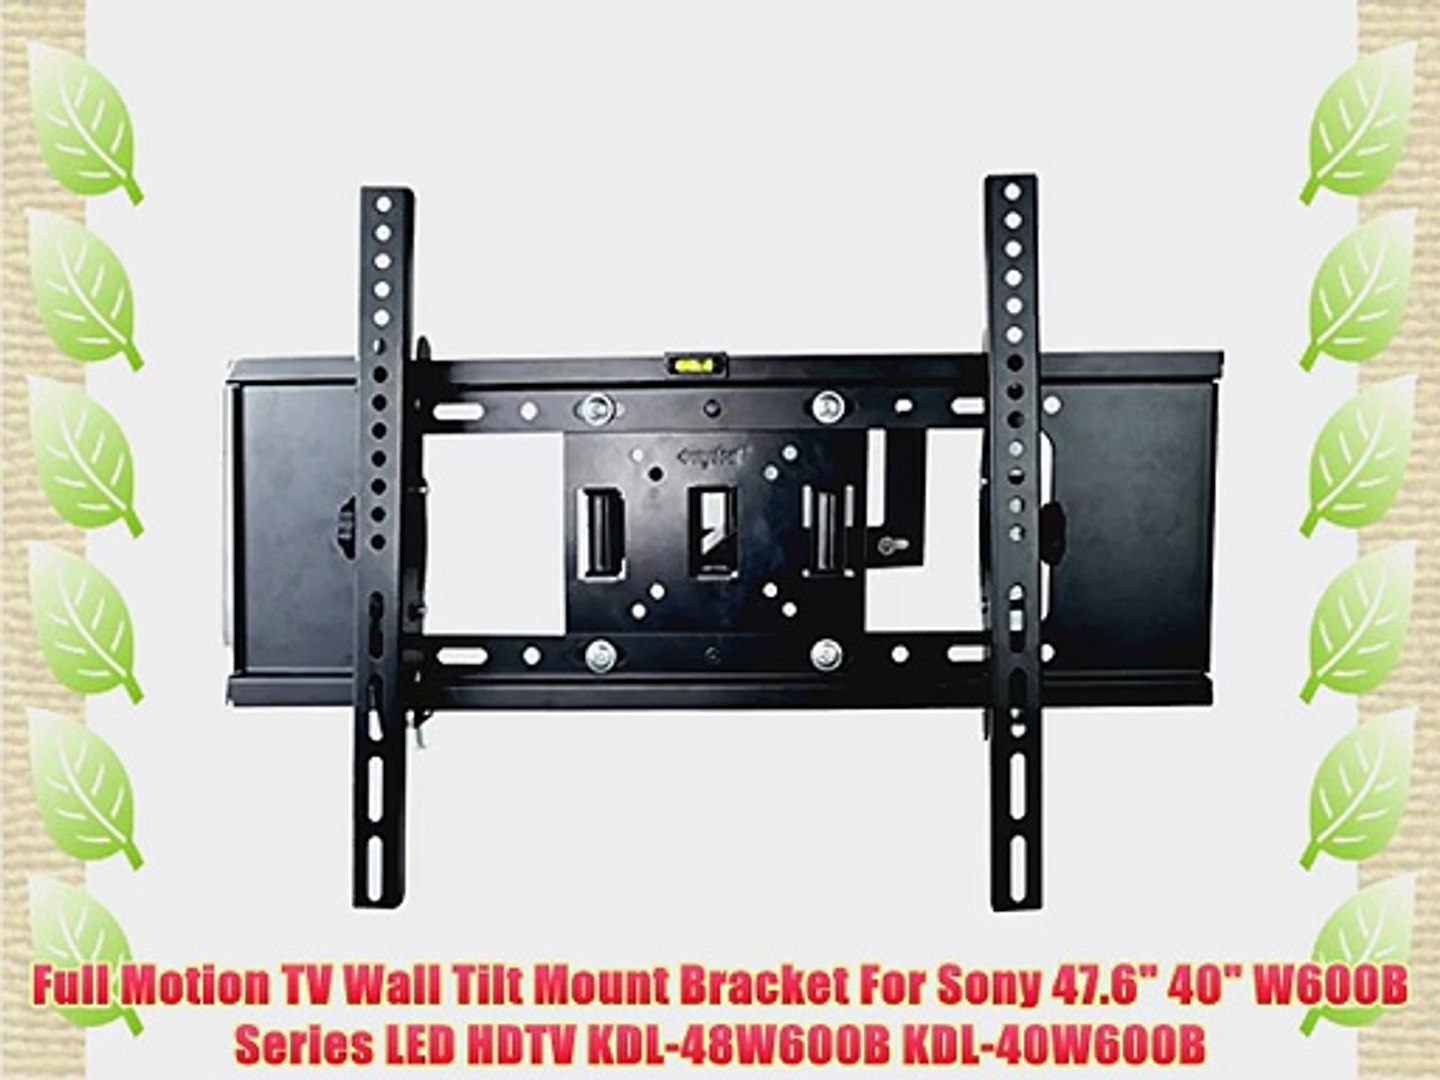 Full Motion TV Wall Tilt Mount Bracket For Sony 47.6 40 W600B Series LED  HDTV KDL-48W600B KDL-40W600B - video Dailymotion